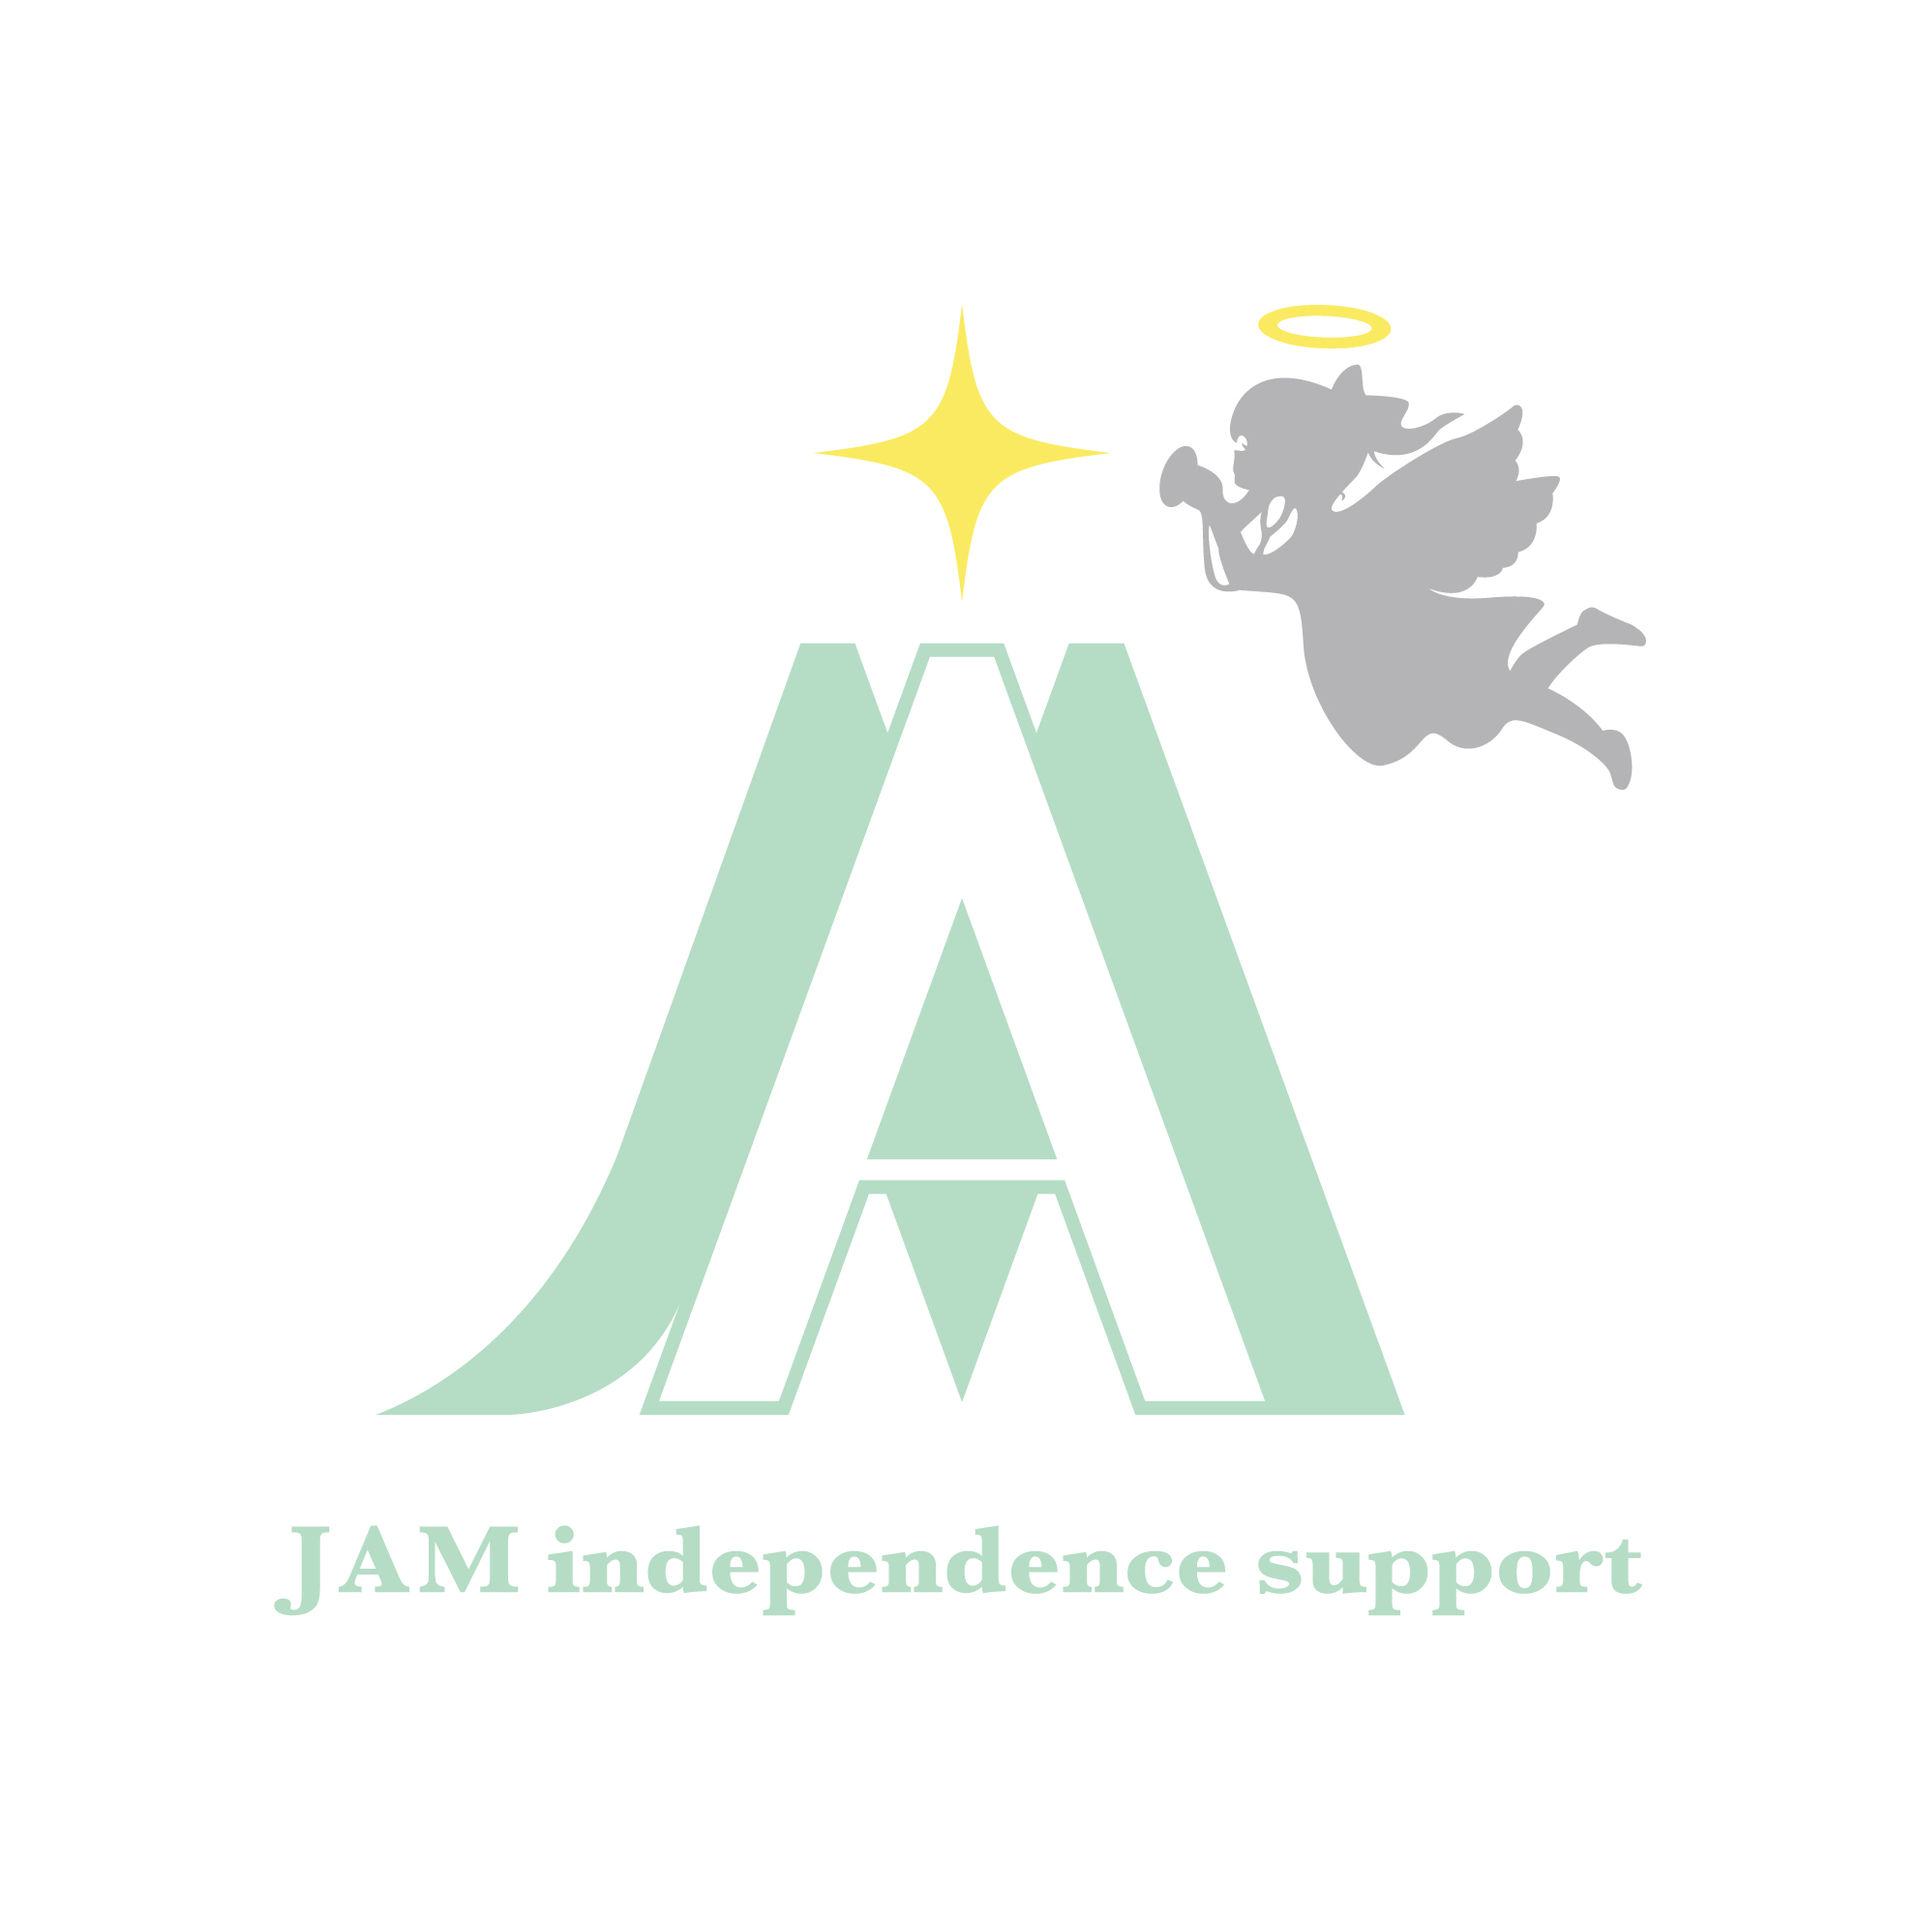 株式会社JAM(JAM independence support 訪問看護)